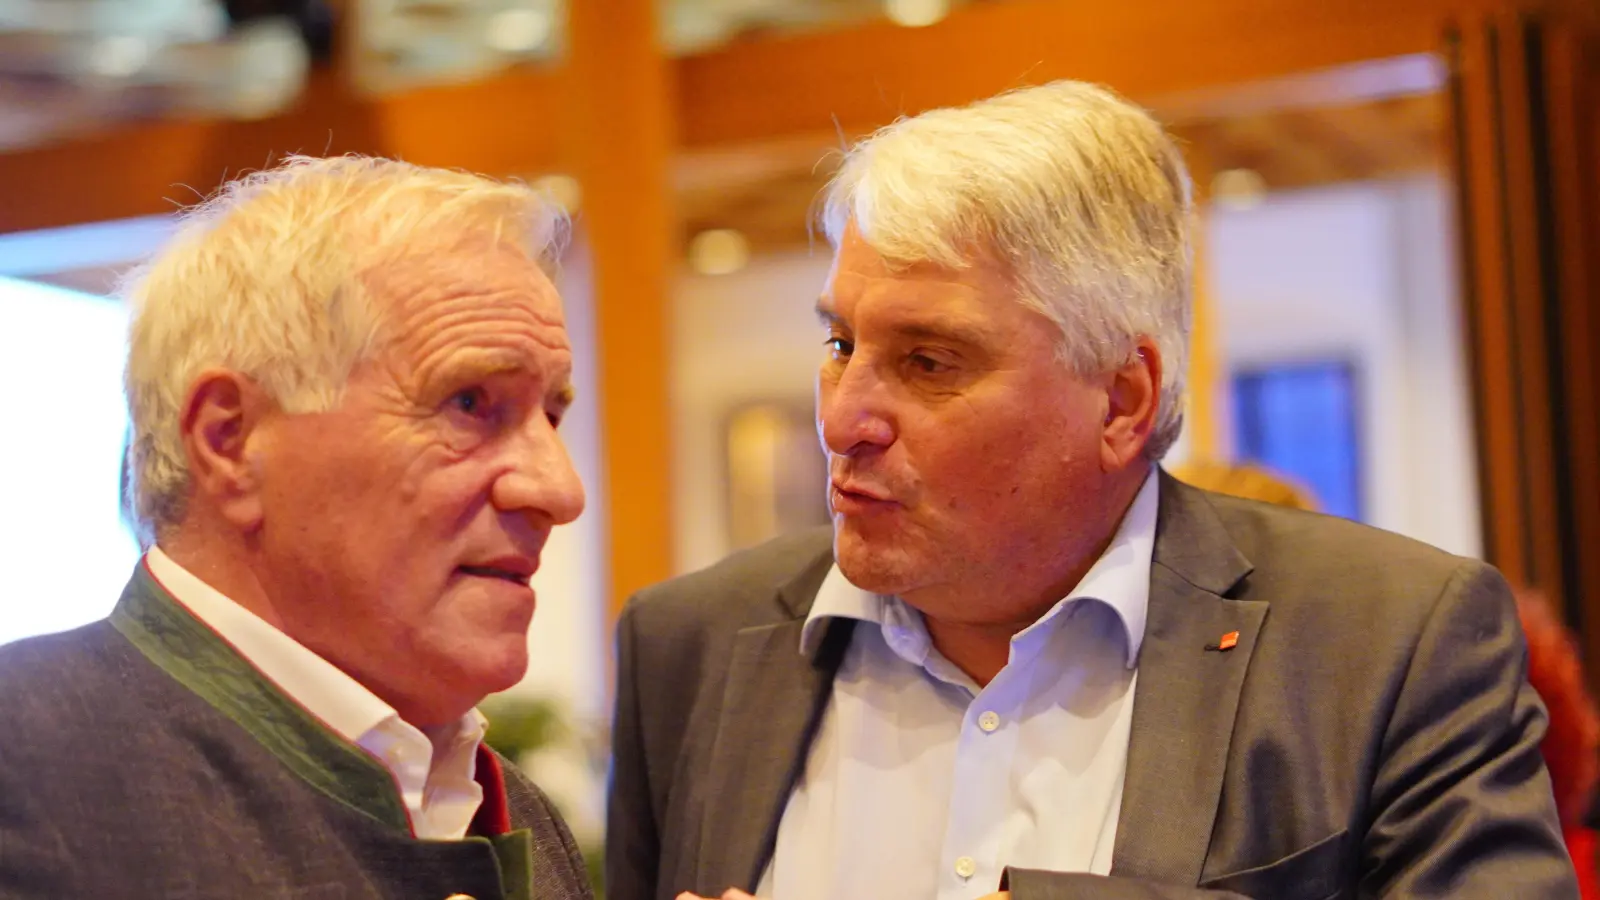 Sie sind nicht mehr dabei: Johannes Hintersberger (links) war viele Jahre für die CSU im Landtag, Harald Güller für die SPD. Beide hatten sich vor der Wahl entschieden, nicht mehr zu kandidieren, und so konnten sie das Wahlergebnis am Sonntag mit einiger Distanz beobachten. (Foto: Maximilian Tauch)